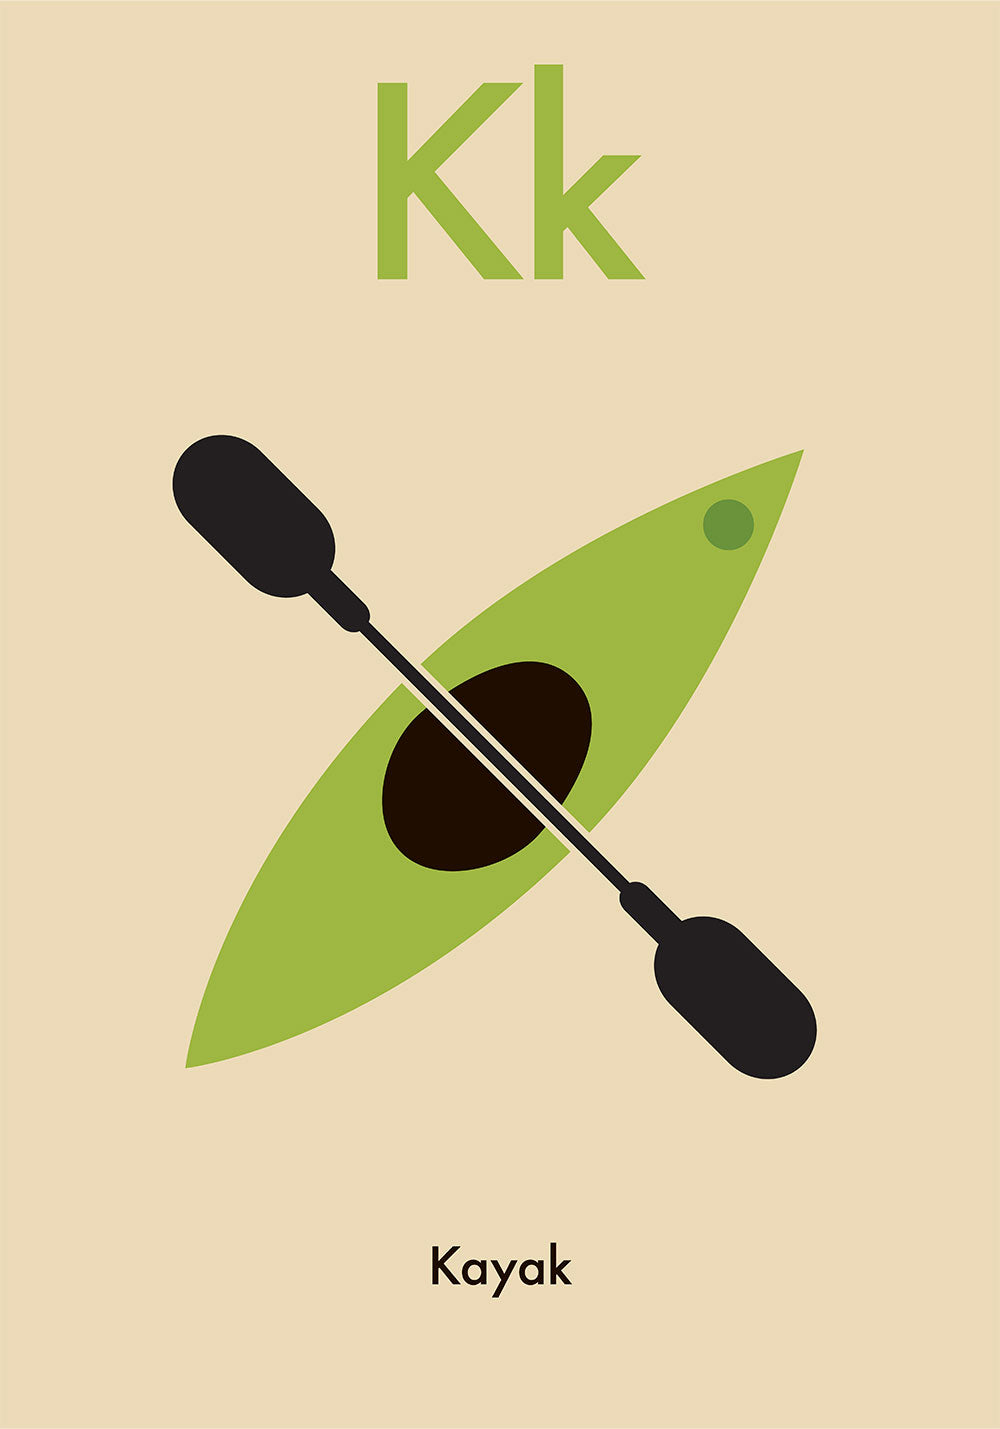 K for Kayak - Children's Alphabet Poster in English